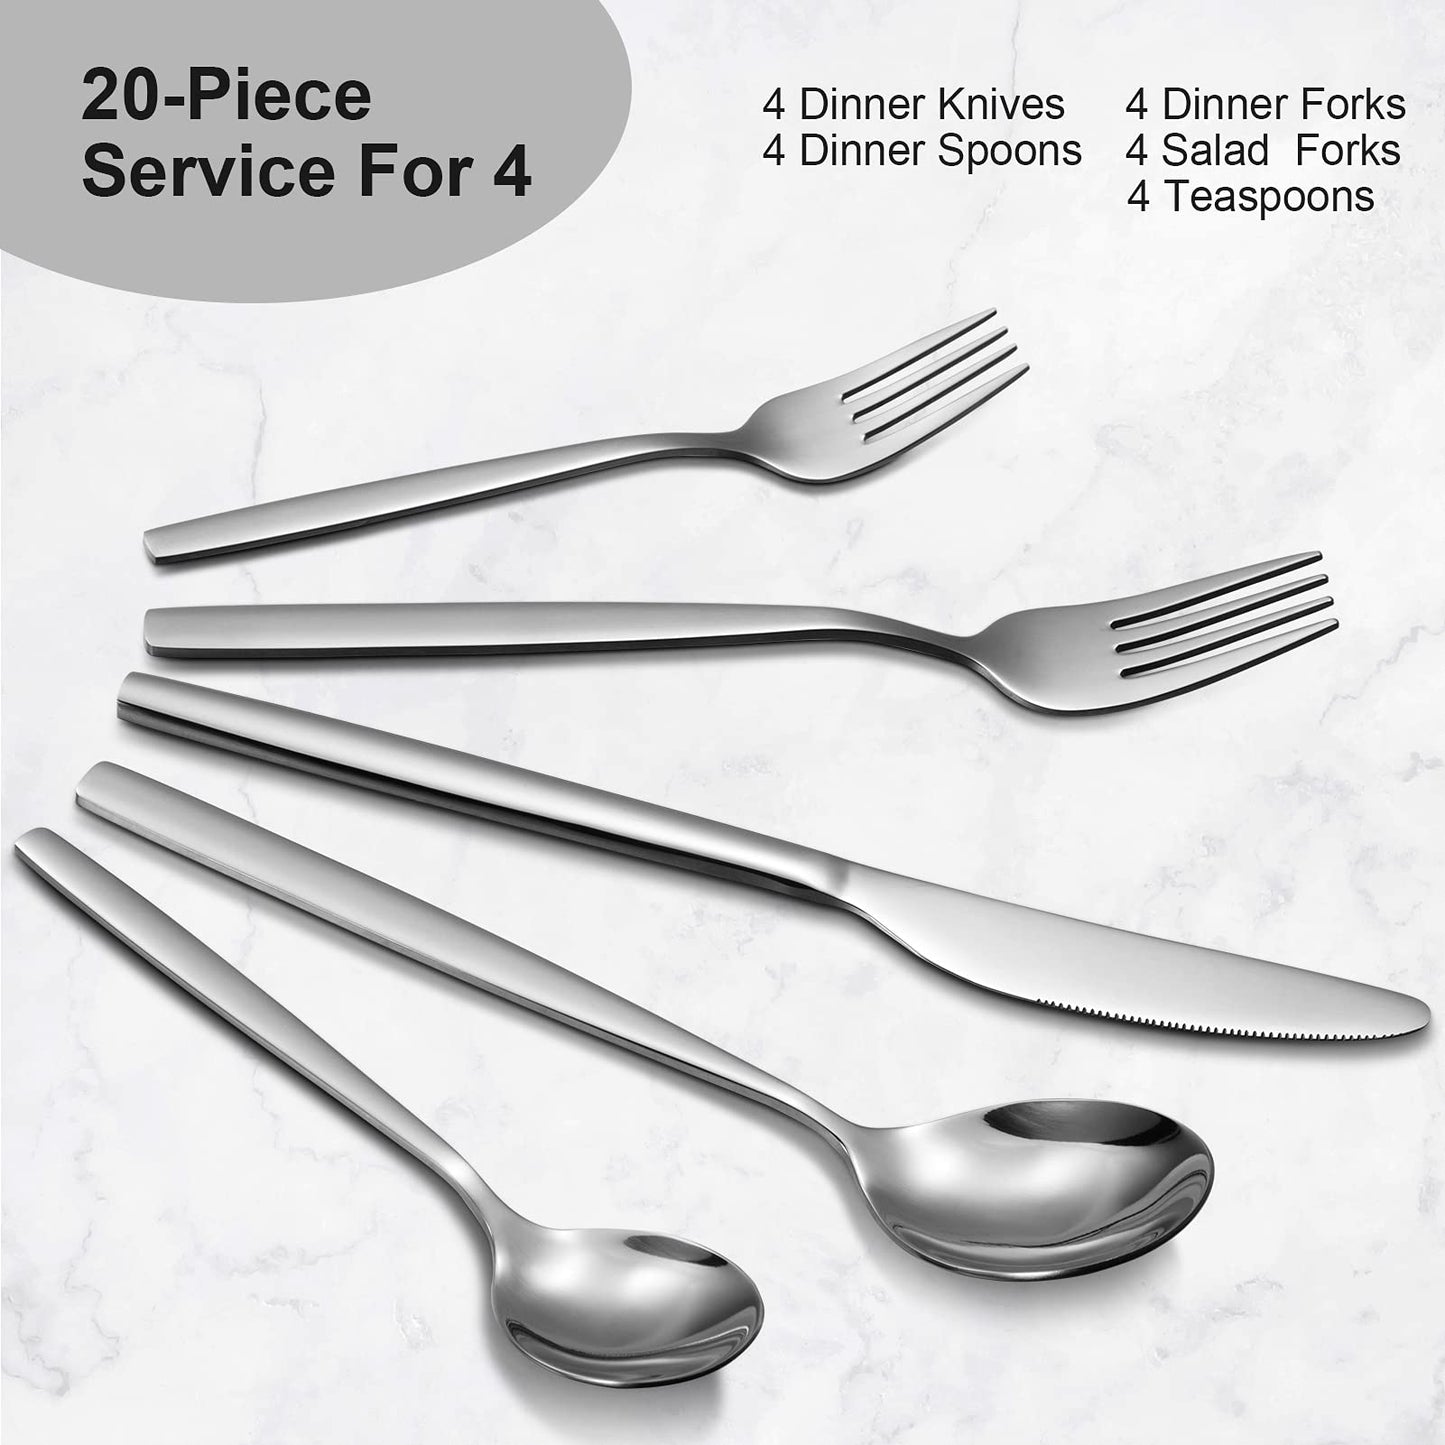 GARVEE 20 Piece Stainless Steel Kitchen Flatware Set - Silver